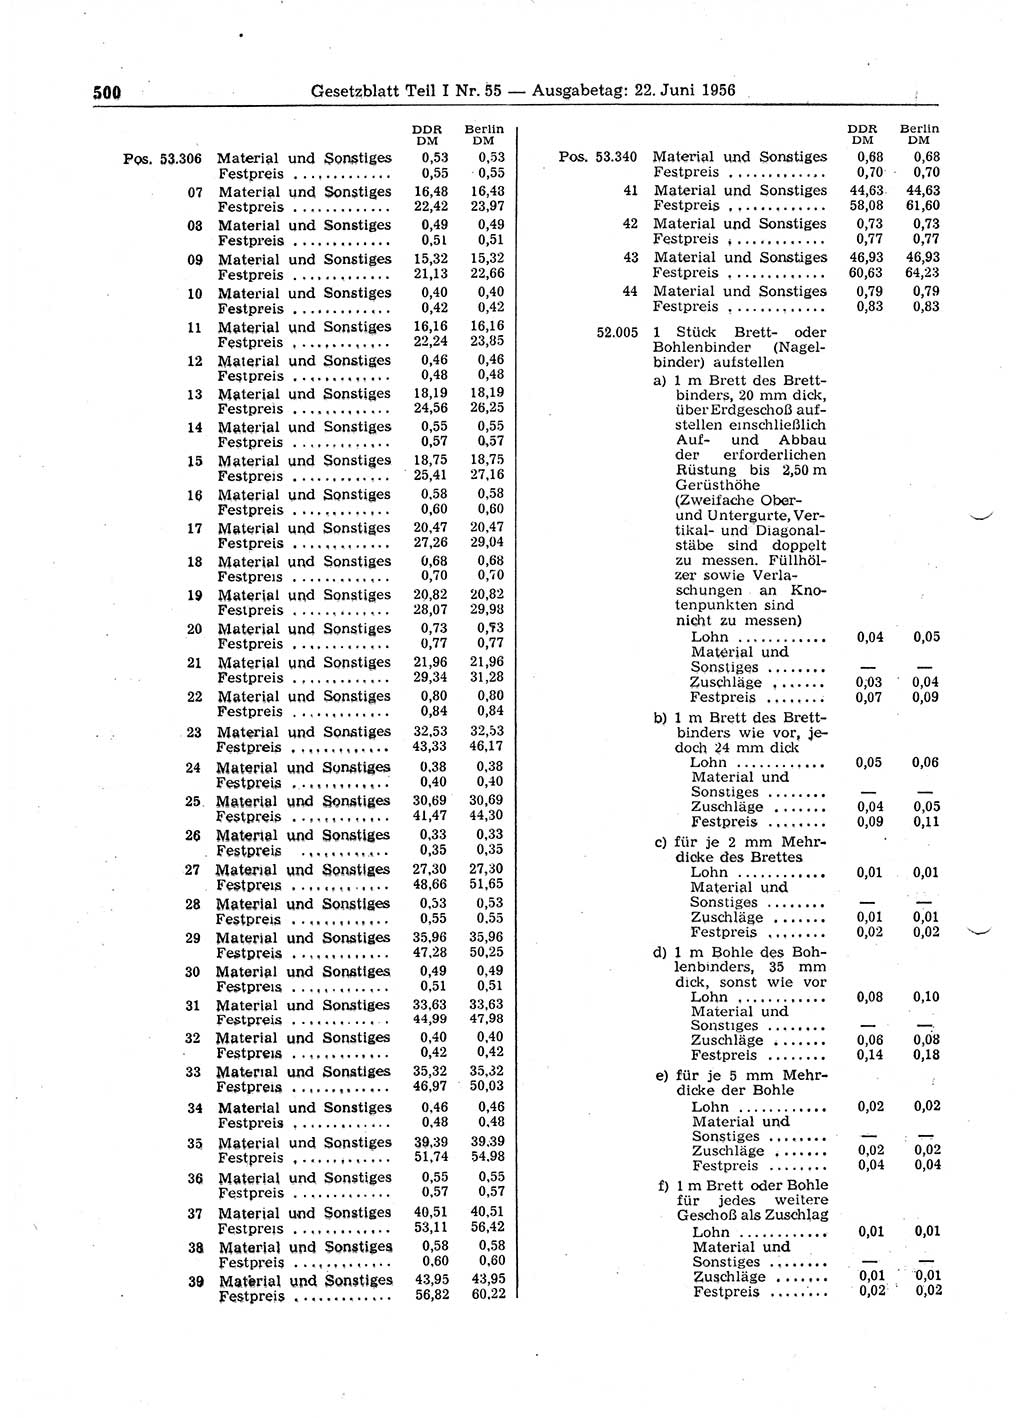 Gesetzblatt (GBl.) der Deutschen Demokratischen Republik (DDR) Teil Ⅰ 1956, Seite 500 (GBl. DDR Ⅰ 1956, S. 500)